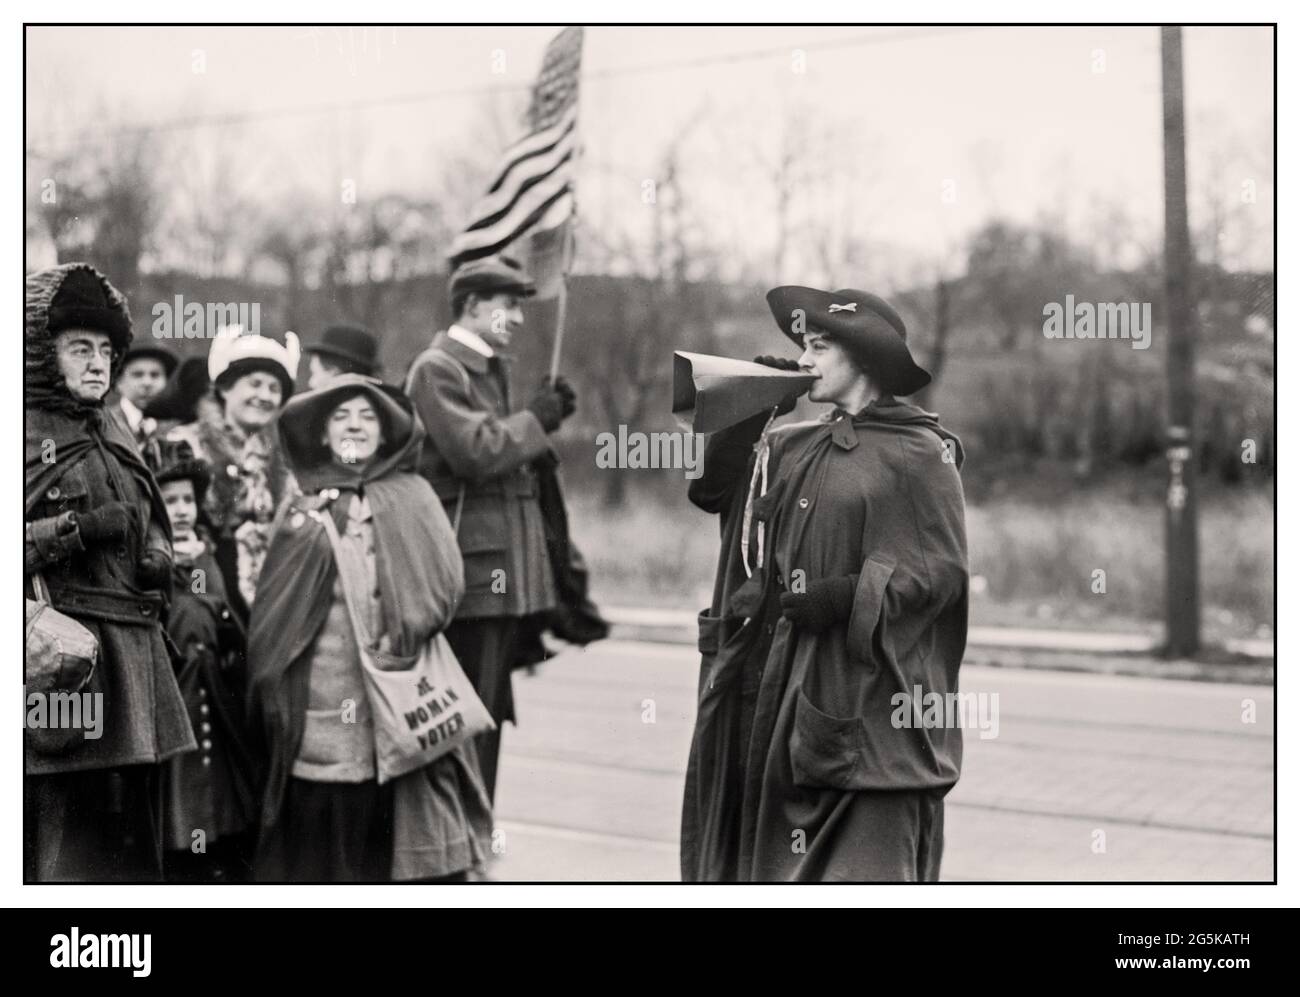 SUFFRAGETTES USA Gen. Jones' 'FORWARD'--suffragettes USA Rosalie Gardiner Jones (24 febbraio 1883 – 12 gennaio 1978) è stata una suffragetta statunitense. Prese i "Pankhurst" come modelli di comportamento e dopo aver sentito parlare delle "donne marroni" organizzò delle marce per attirare l'attenzione sulla causa del suffragio. Era conosciuta come "generale Jones" a causa del suo seguito. Creato / pubblicato [tra ca. 1910 e ca. 1915] visto qui motivare i suoi seguaci con un megafono fatto a mano. America USA Foto Stock